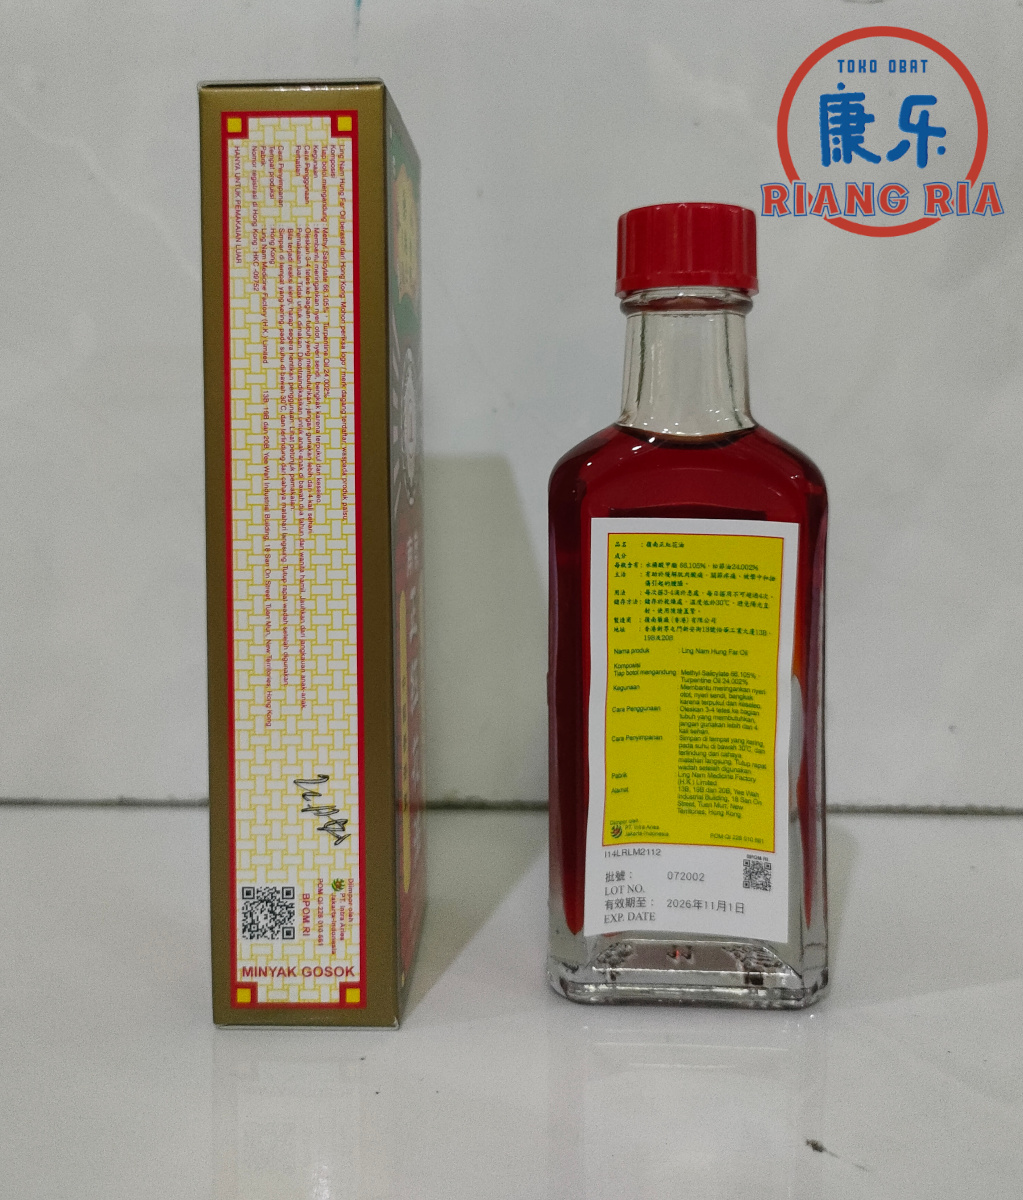 Ling Nam Hung Far Oil 30ml – Zheng Hong Hua You – Minyak Gosok Merah